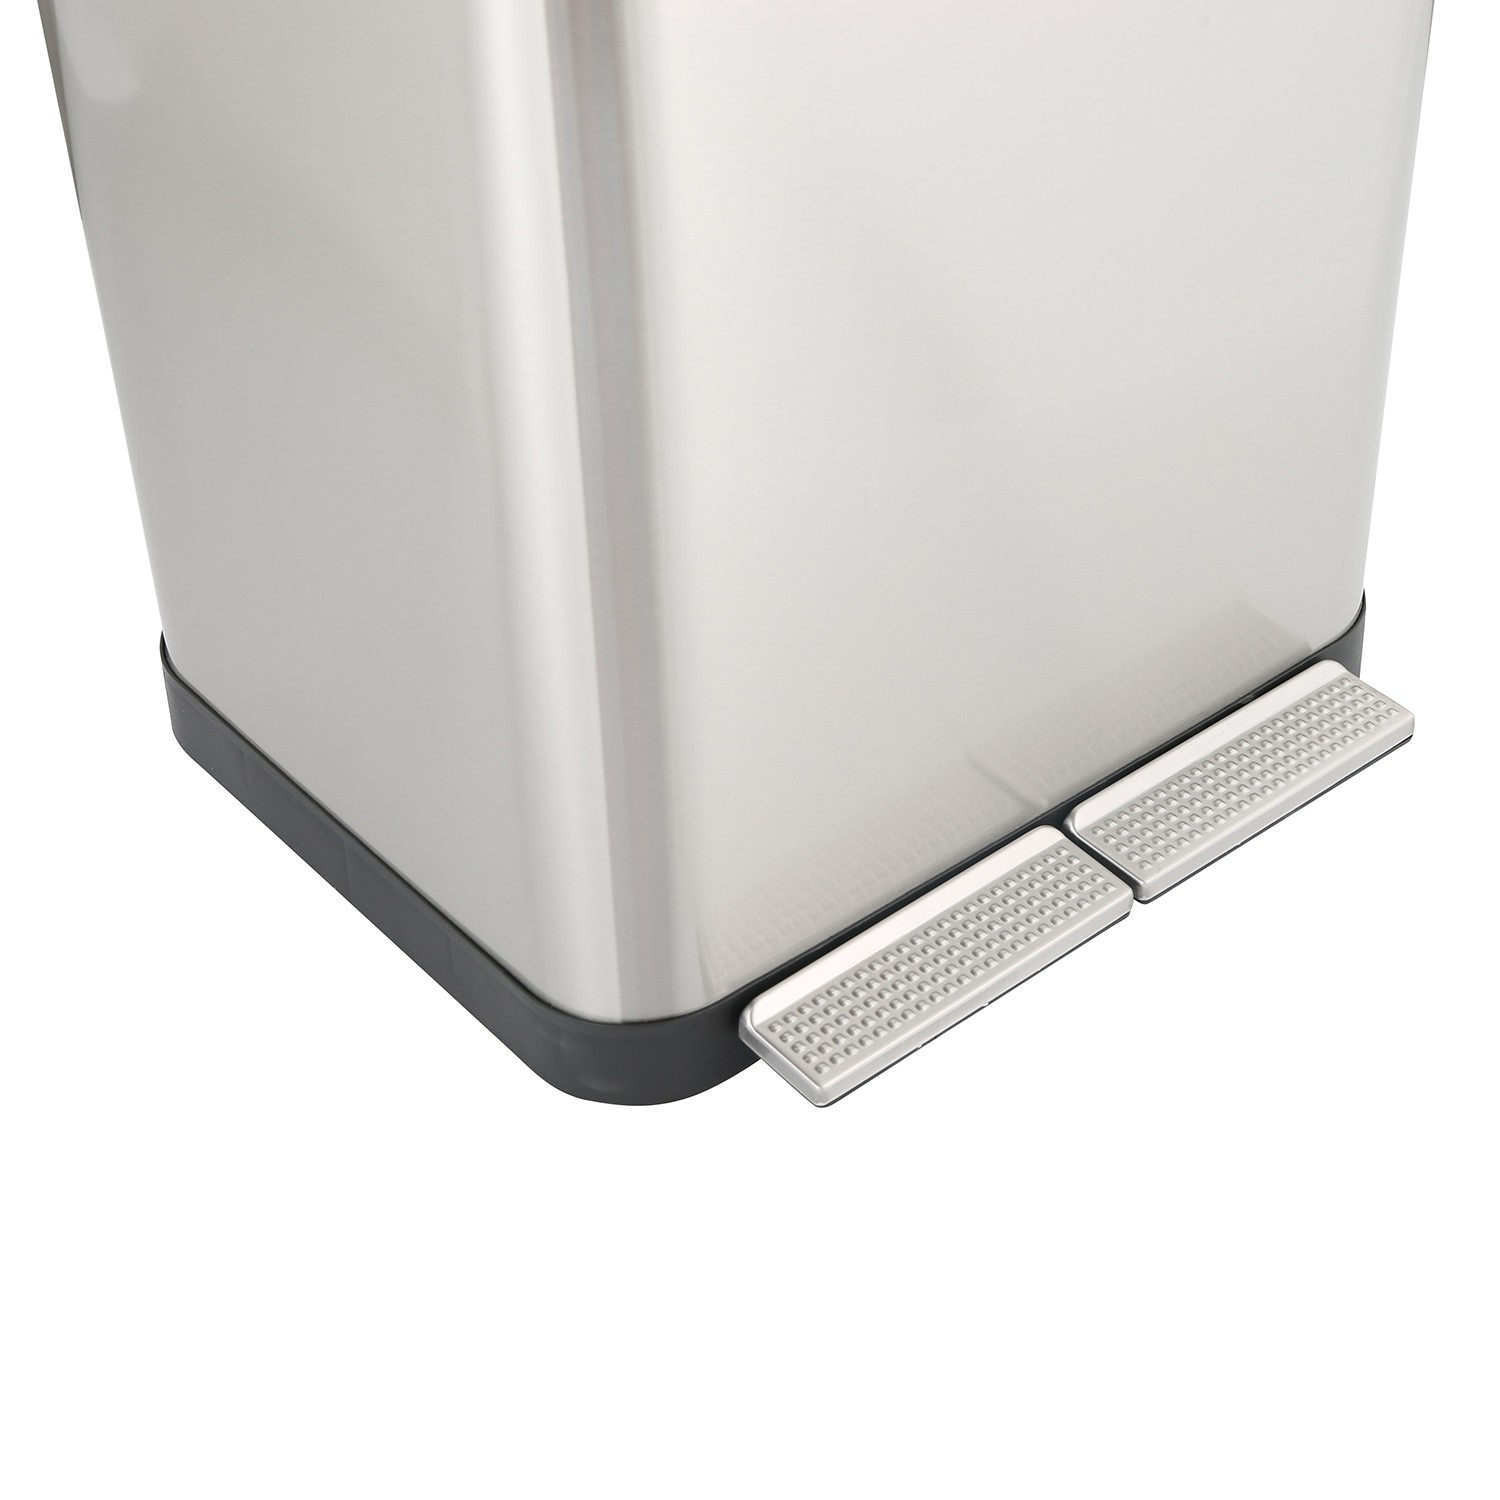 Caixote de lixo reciclável de aço inoxidável de compartimento duplo 15L+15L (KL-105)